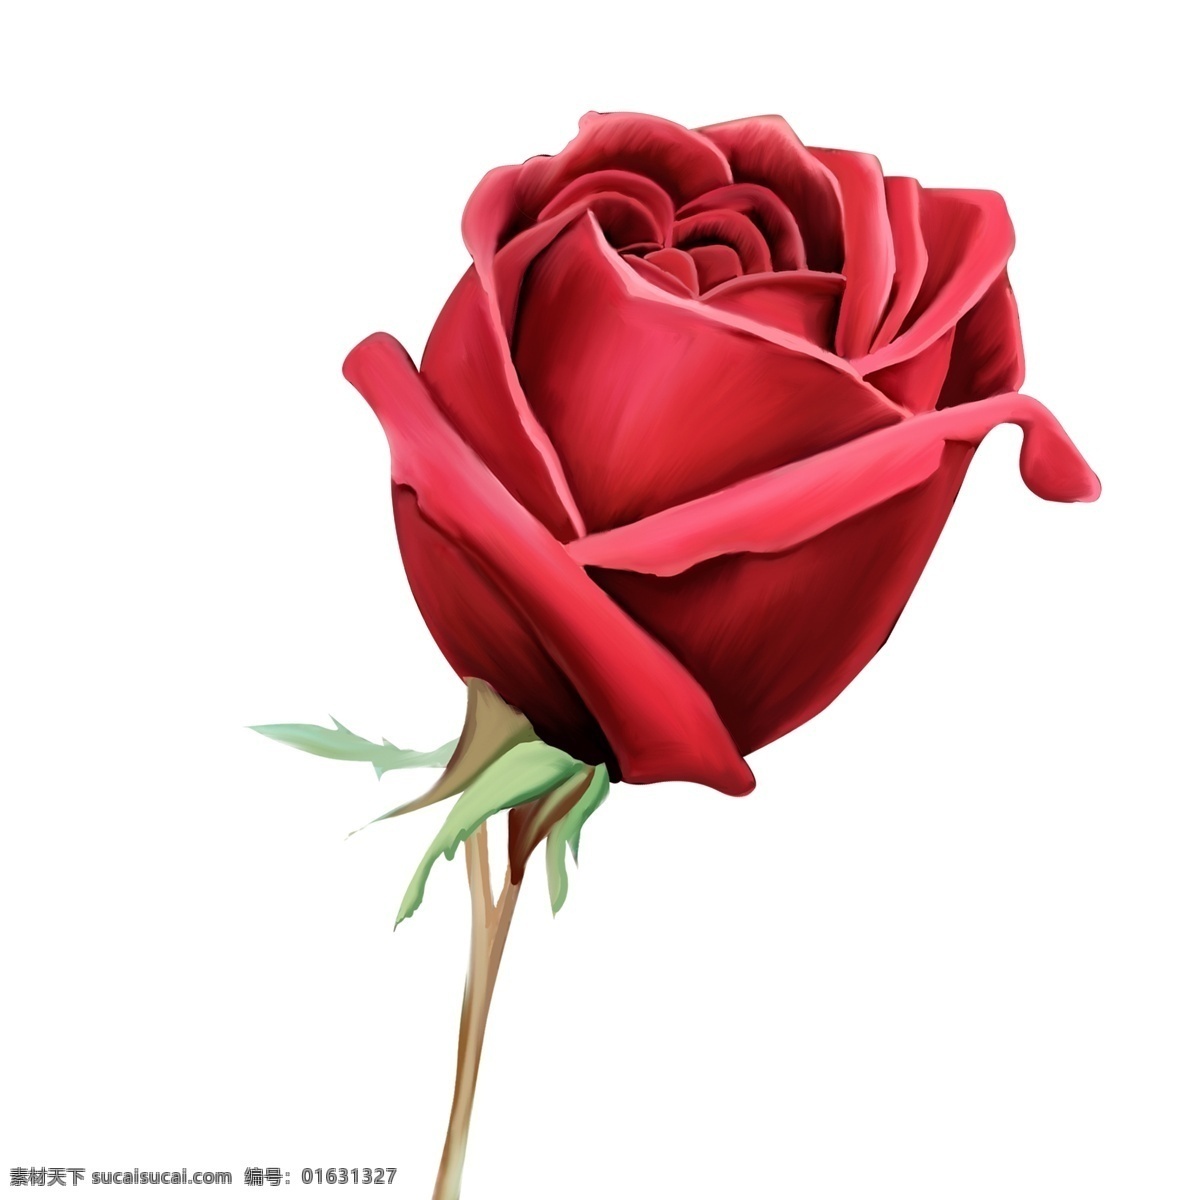 大气 免 抠 欧式 玫瑰花 支 欧式玫瑰花 红玫瑰 植物元素 花卉 红色